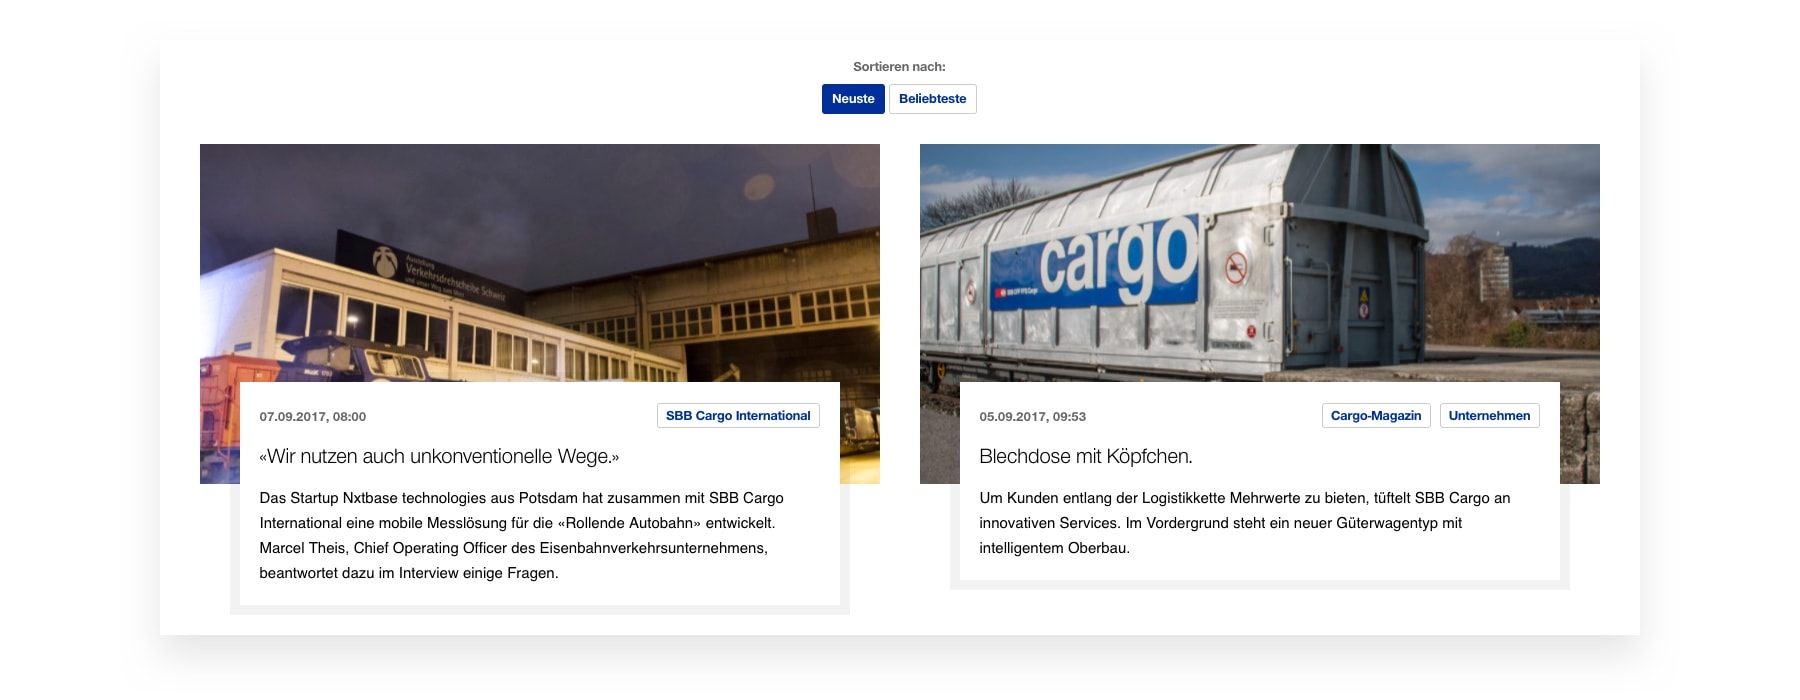 SBB Cargo Blog: Wechsel zwischen neuesten und beliebtesten Artikeln